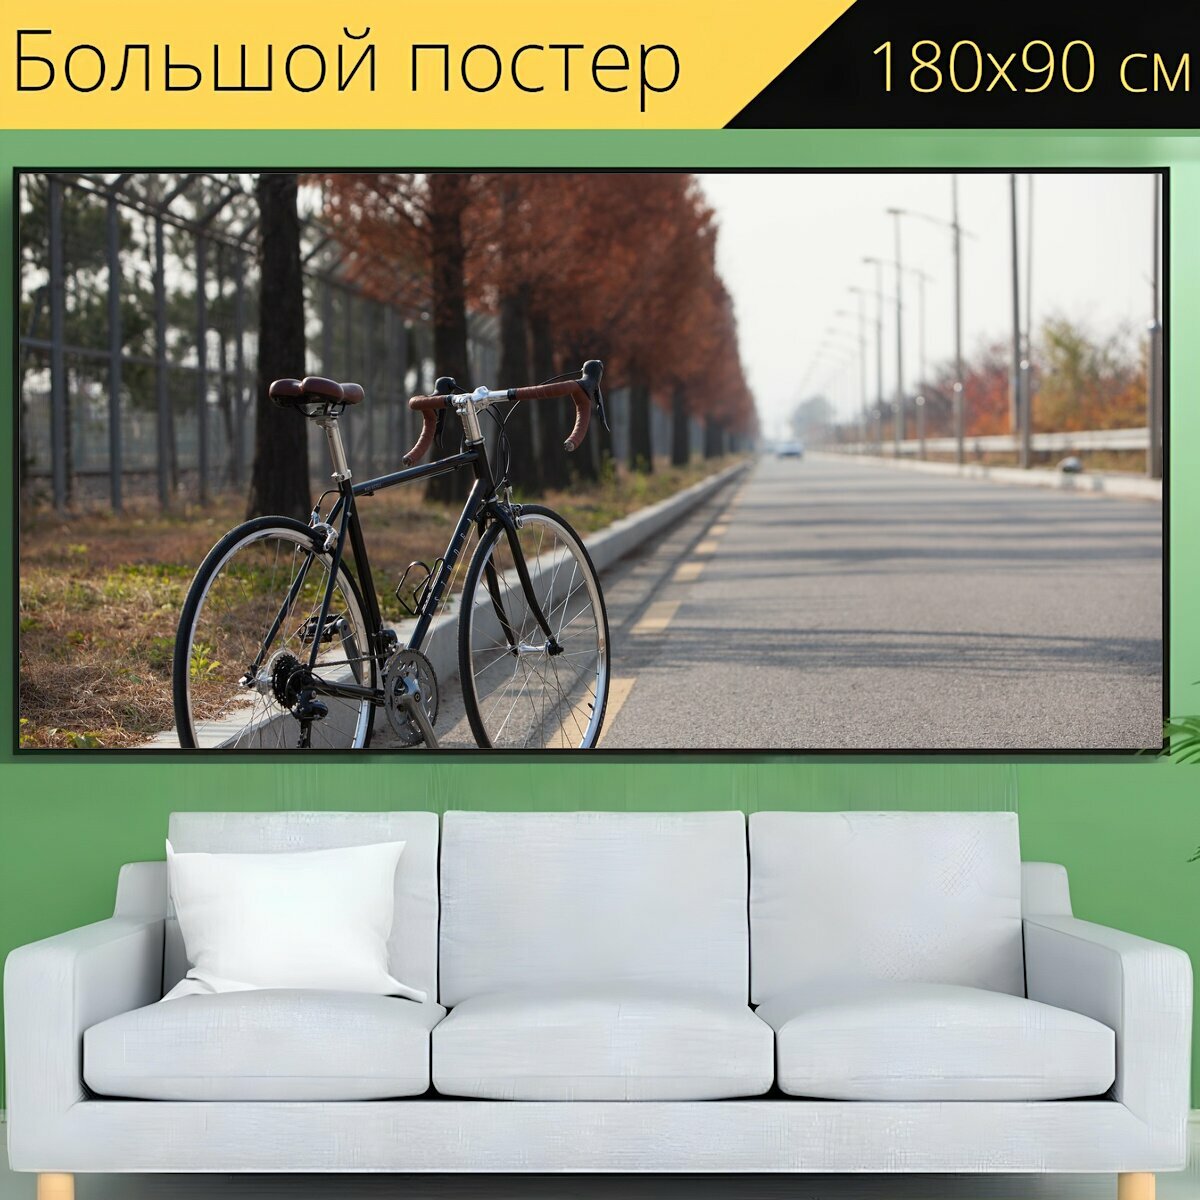 Большой постер "Дорога, цикл, шоссейный велосипед" 180 x 90 см. для интерьера